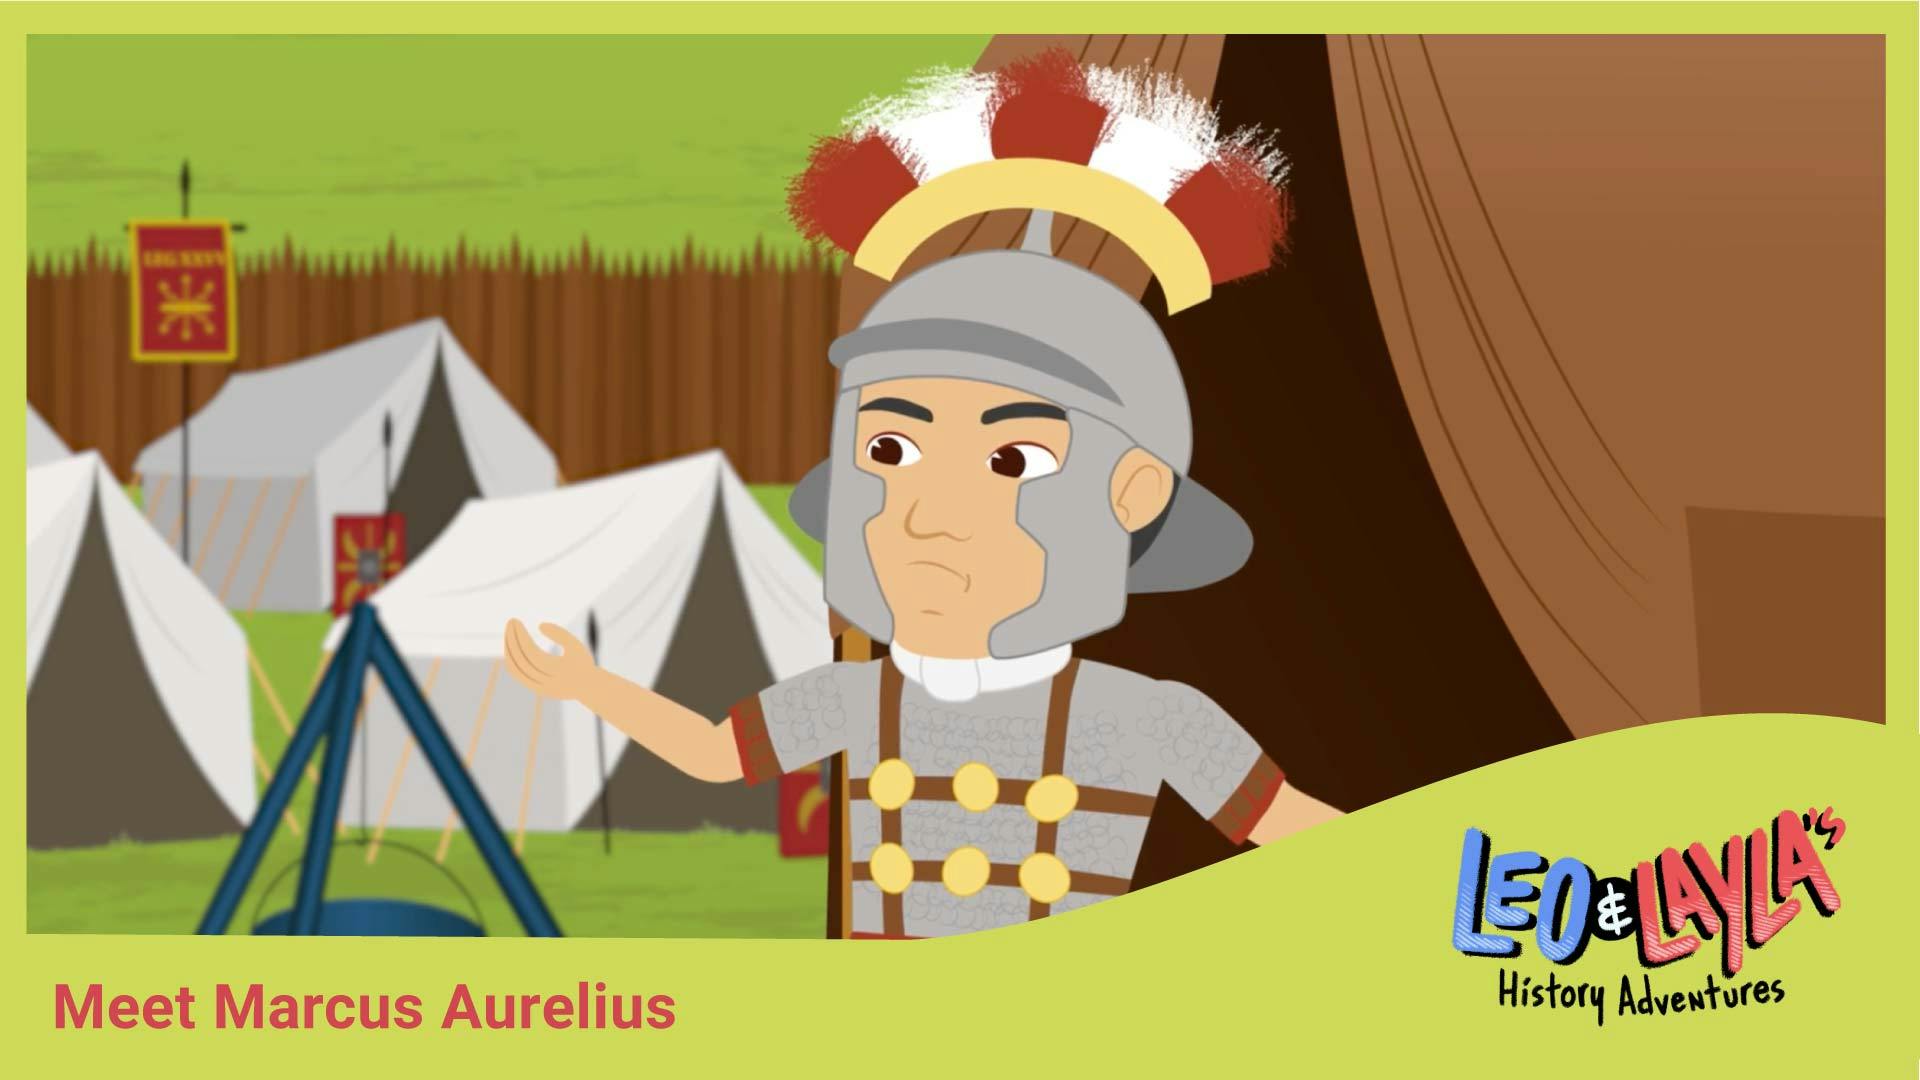 Marcus Aurelius: The Wise Roman Emperor